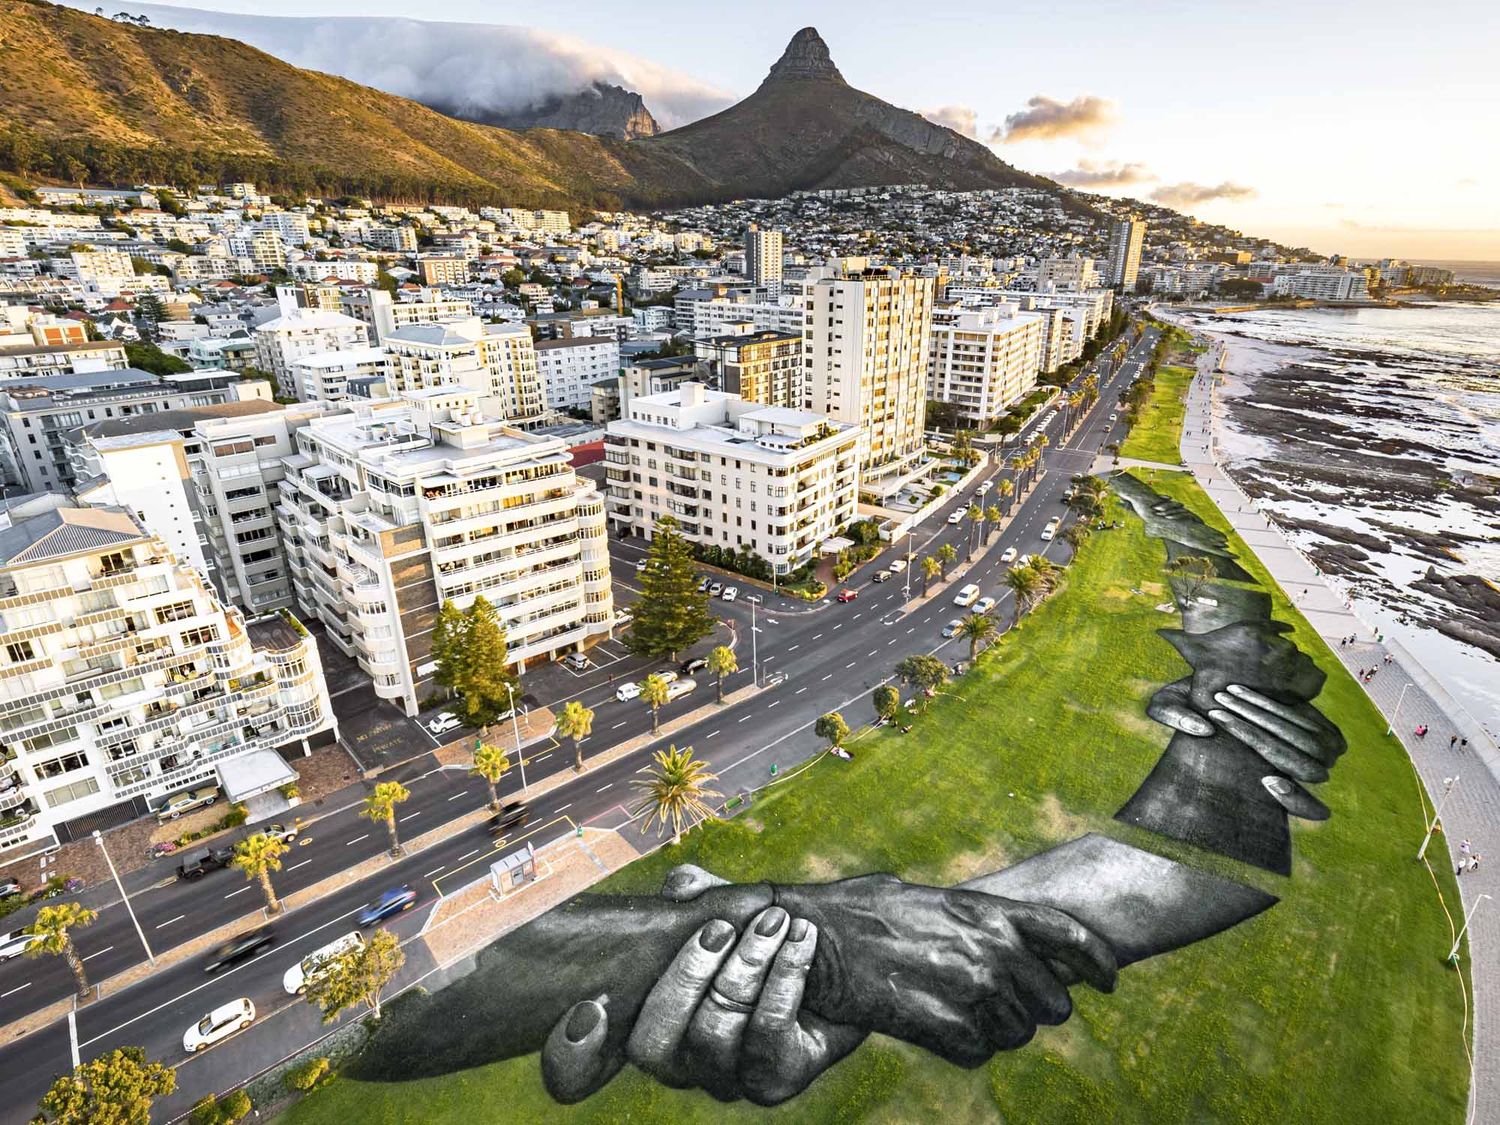 Reconnu comme plus grand festival de Street Art d'Afrique, l'IPAF est un mélange de fresques murales et pop-ups qui a placé Cape Town à la pointe de l'Art Urbain sur le continent africain (@Saype).